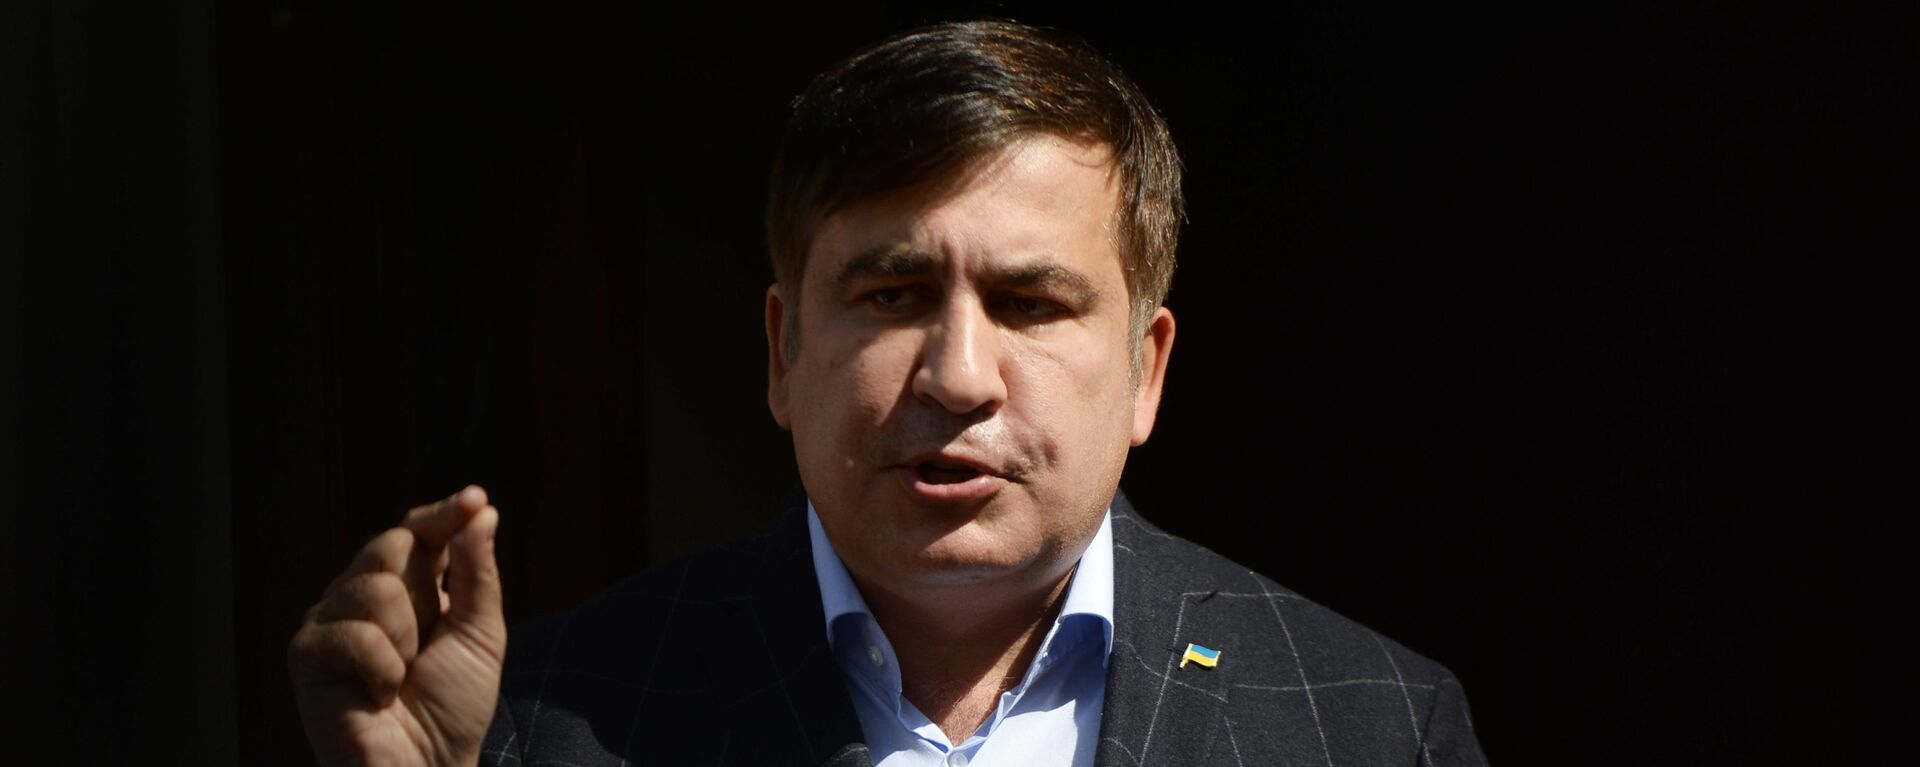 Бывший президент Грузии, экс-губернатор Одесской области Михаил Саакашвили - Sputnik Молдова, 1920, 01.10.2021